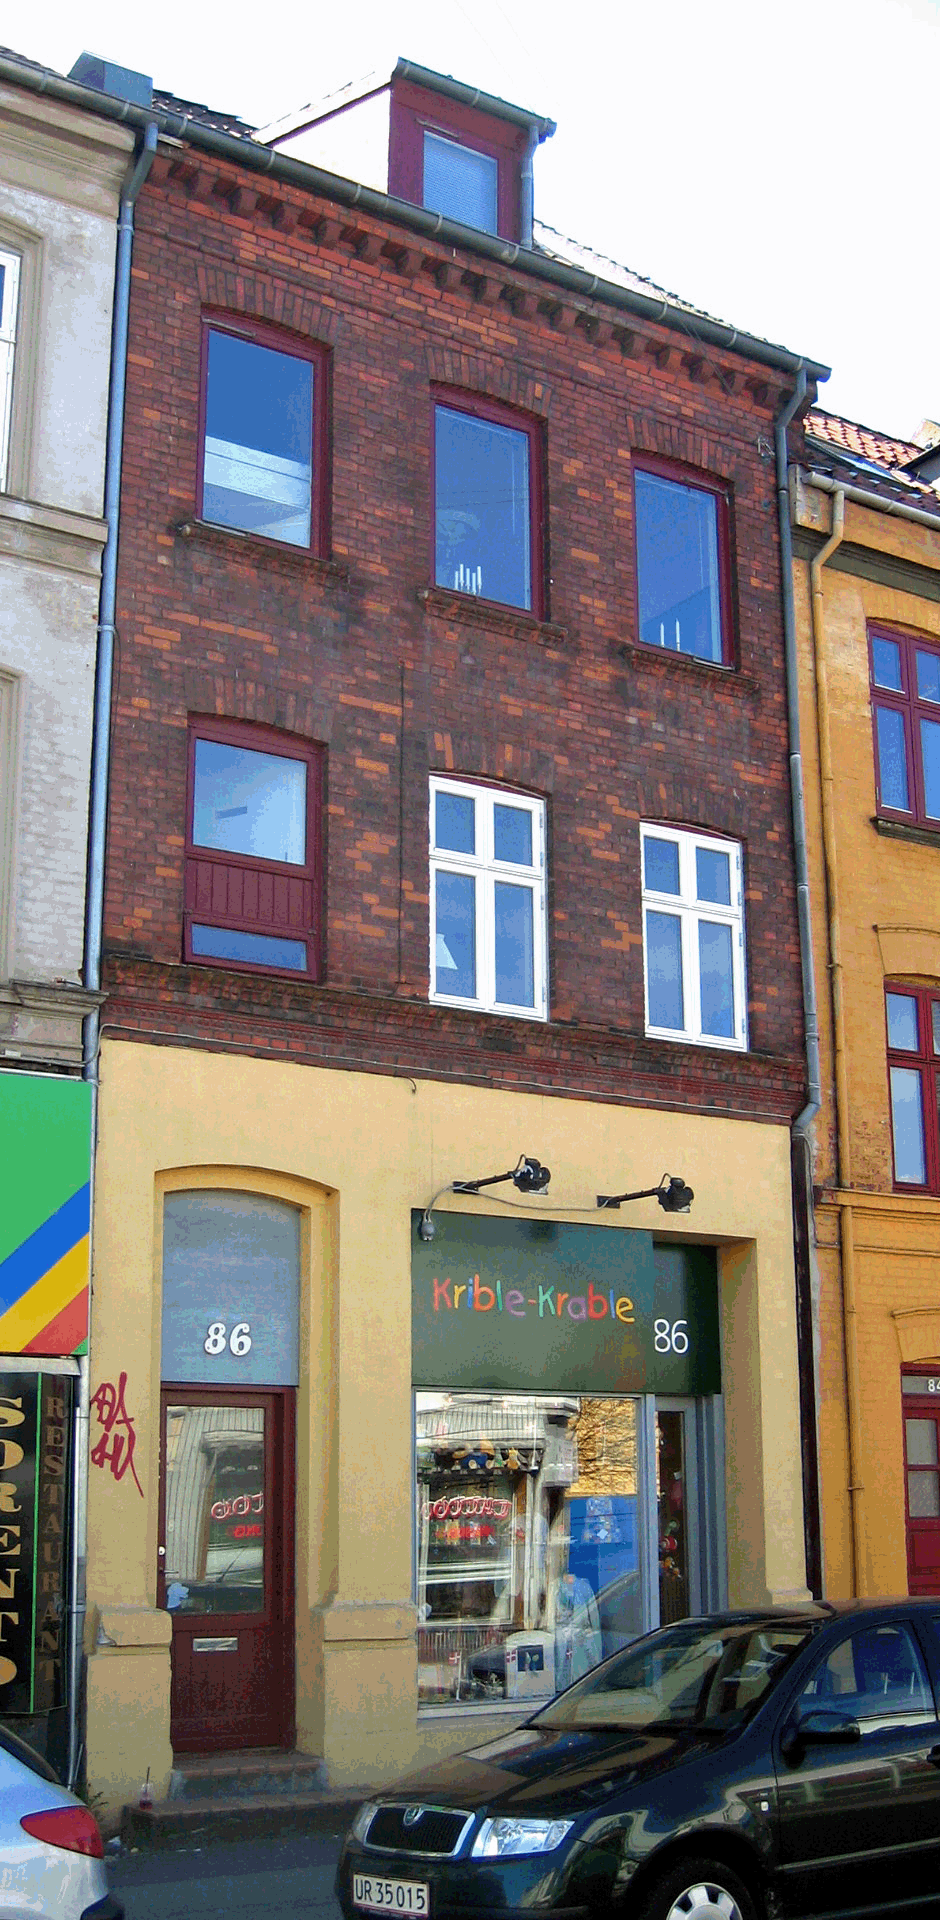 Jgergrdsgade 86, rhus - April 2005